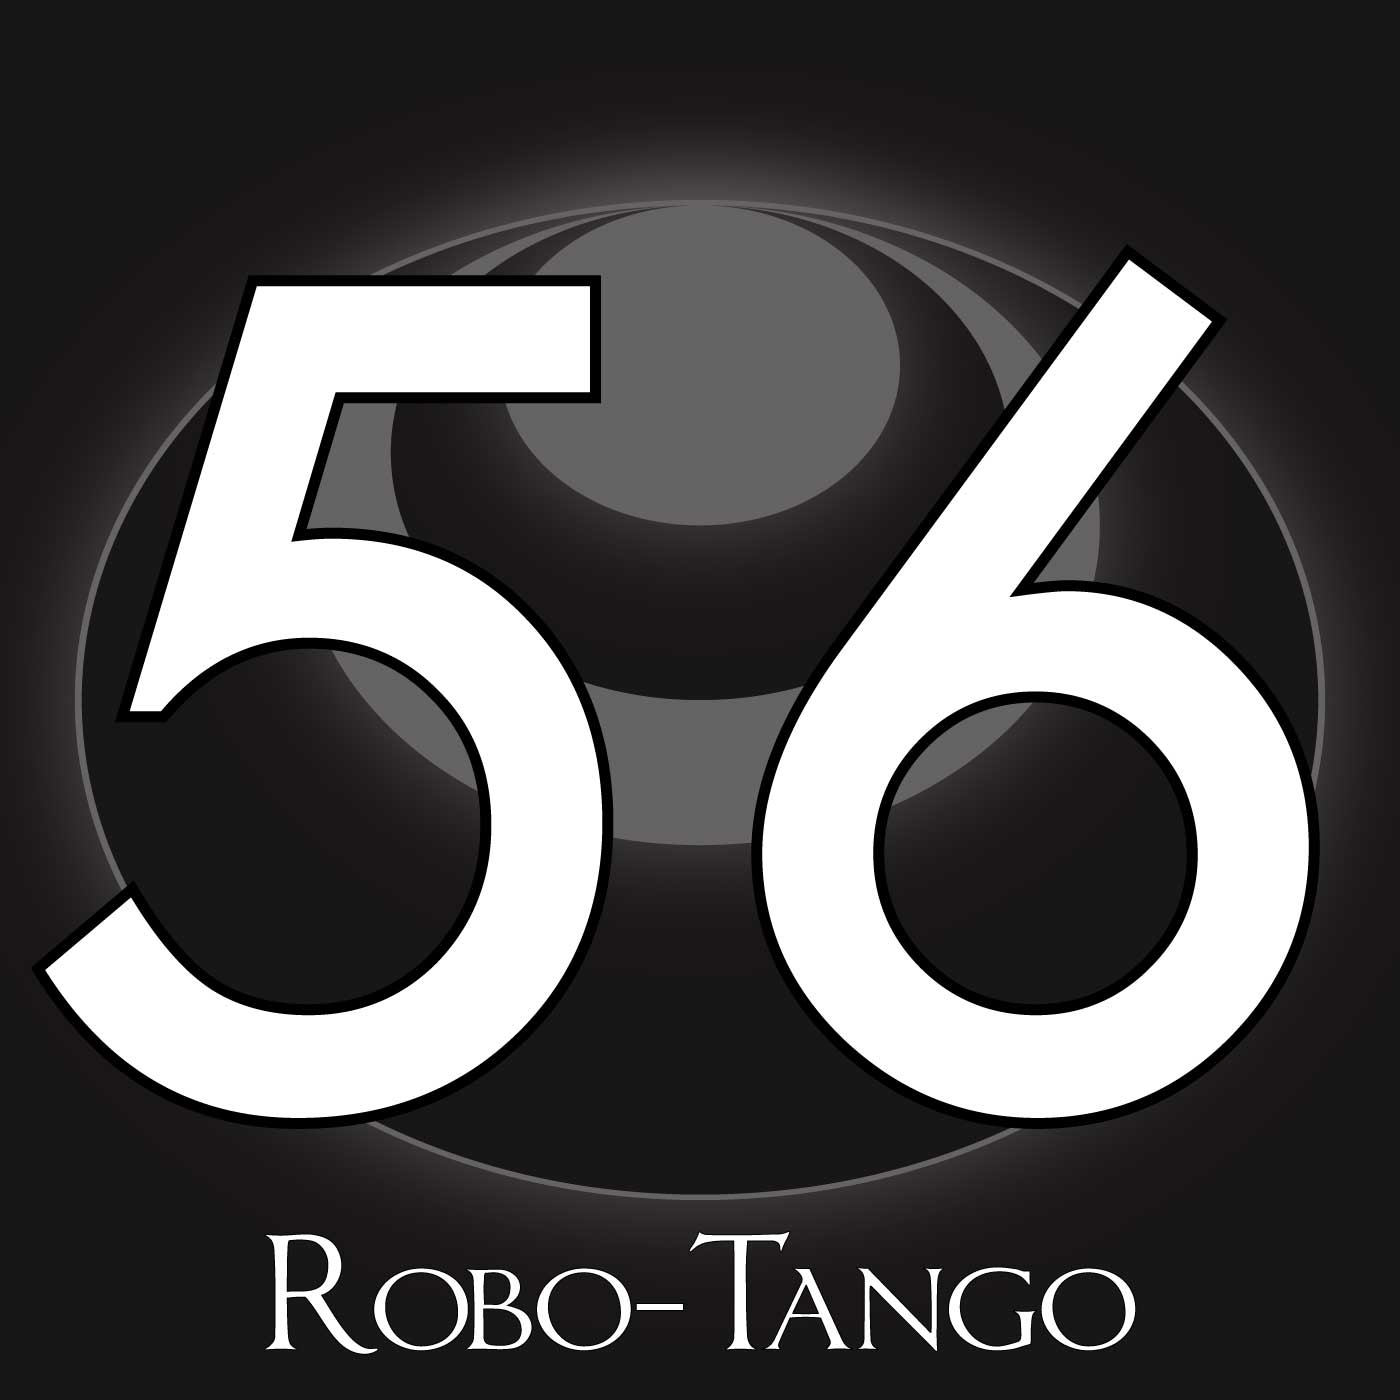 56 – Robo-Tango